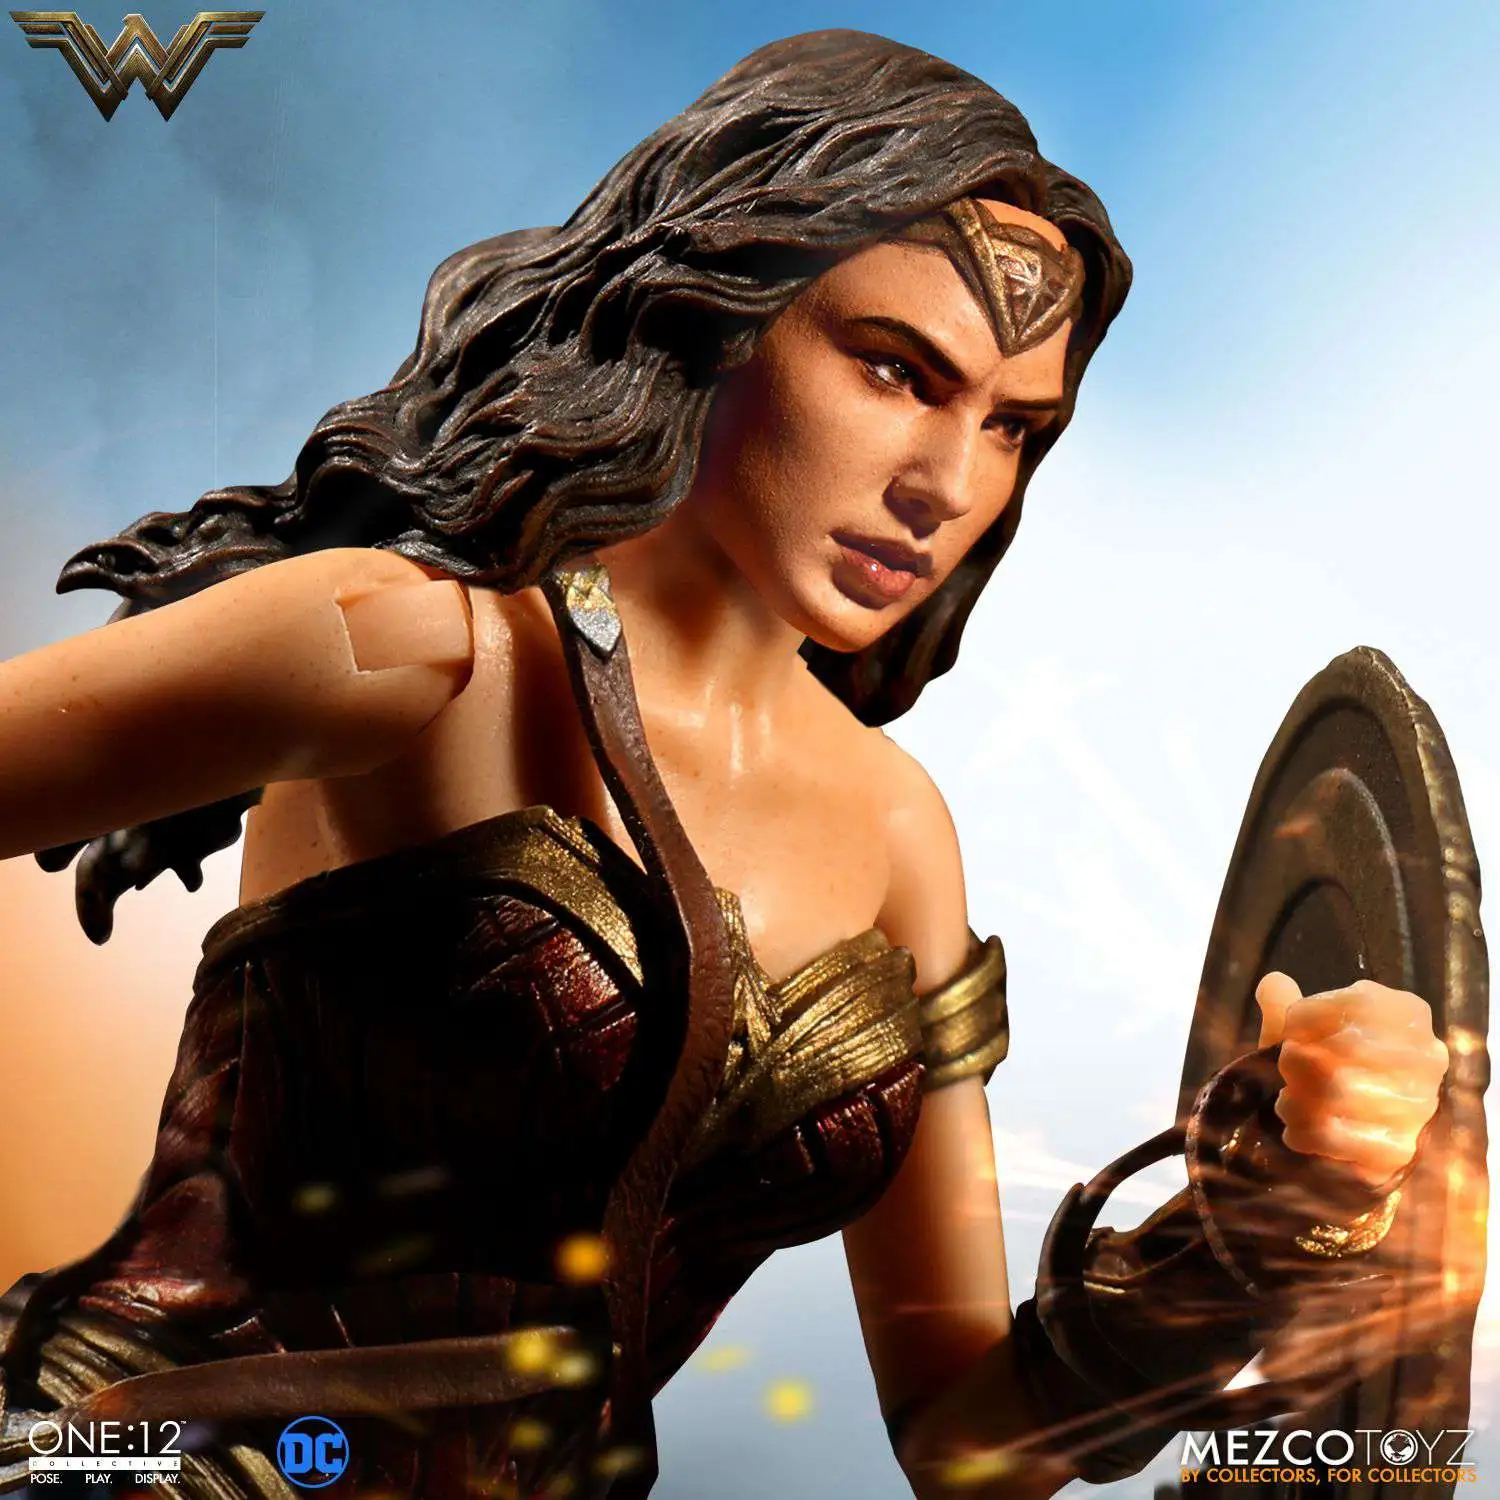 Mezco DC Wonder Woman 6 in Action Figure Apr178878 for sale online 